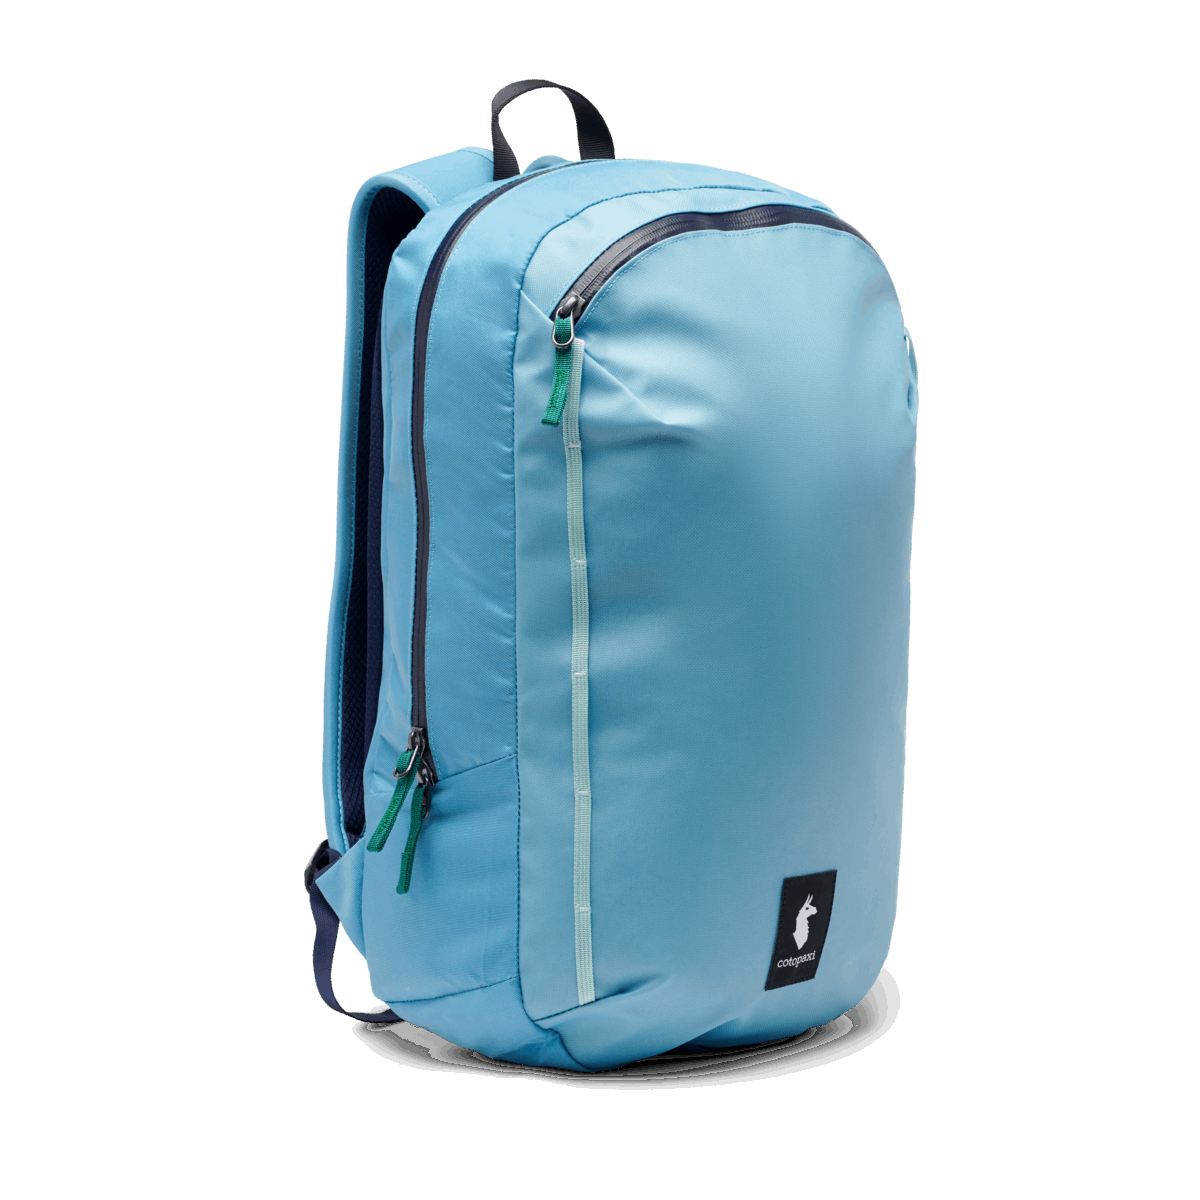 Cotopaxi Vaya 18L Backpack - Cada Día - River